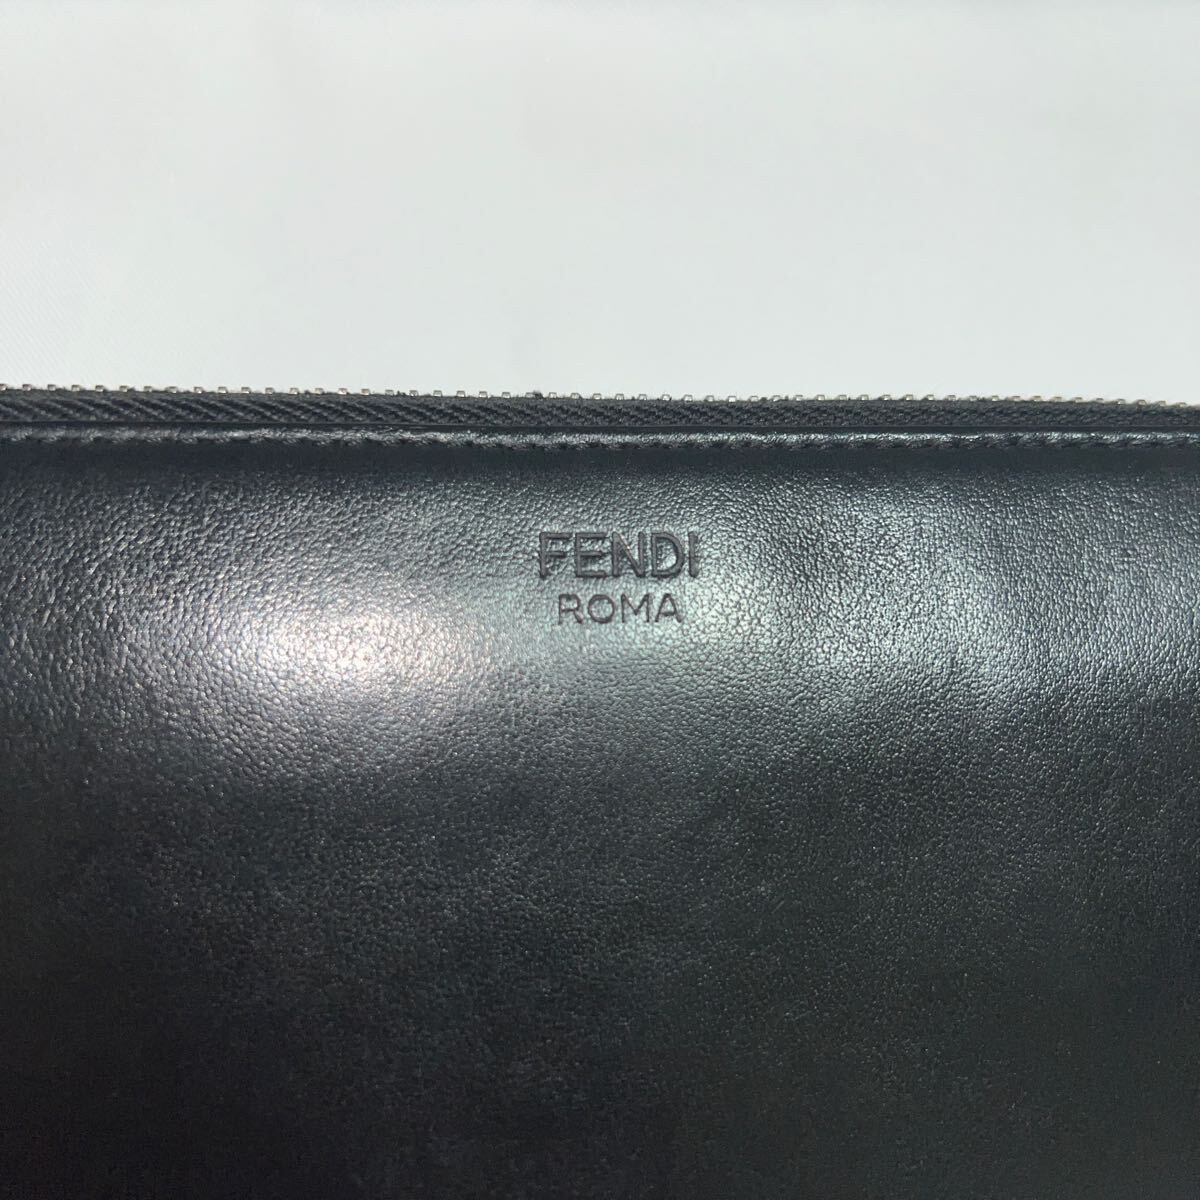  мужской FENDI длинный кошелек раунд застежка-молния бумажник 